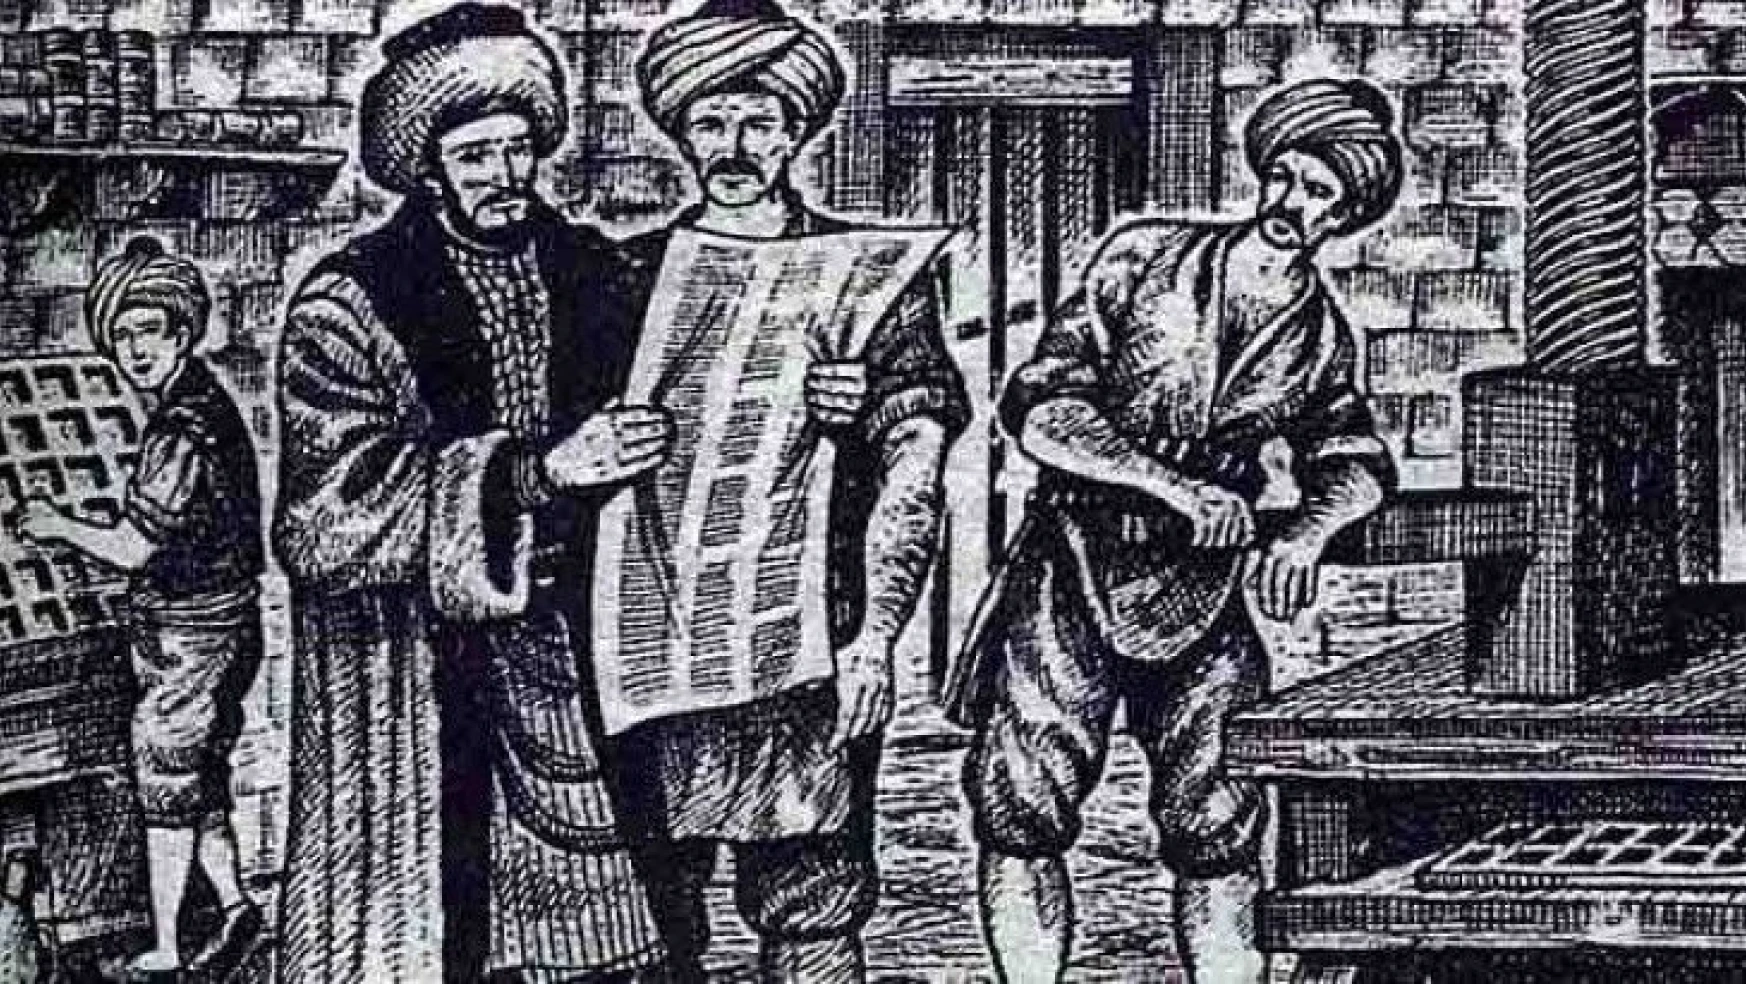 Osmanlı Devleti'nde ilk gazetelerin yabancı dilde yayımlanmalarının sebepleri nelerdir?